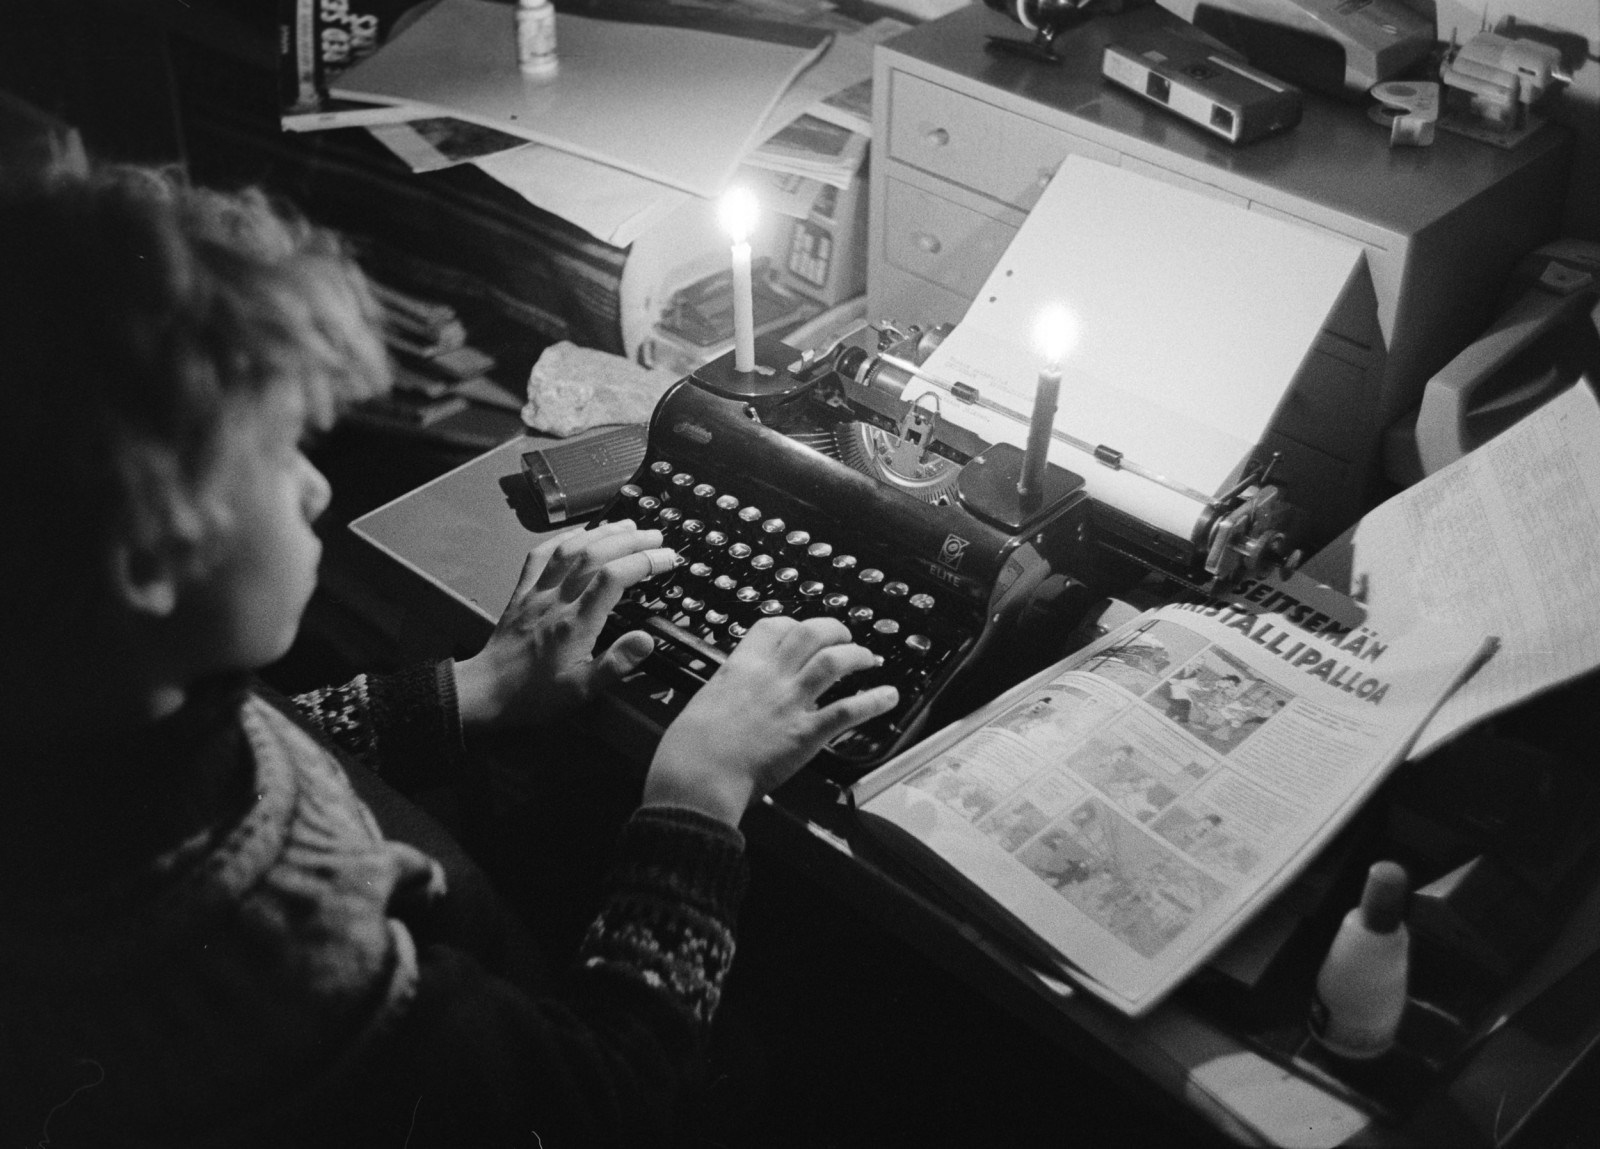 Poika kirjoittaa mekaanisella kirjoituskoneella kynttilänvalossa. Kuva: Helsingin kaupunginmuseo/Lauri Pietarinen, 1970-luku.